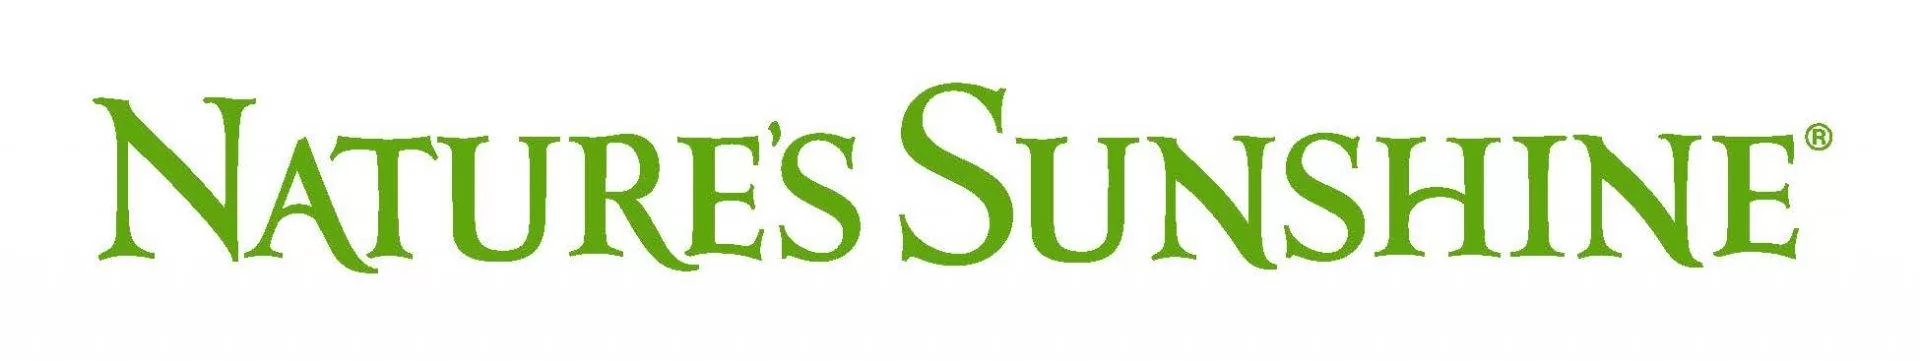 Natures-Sunshine-Logo-1